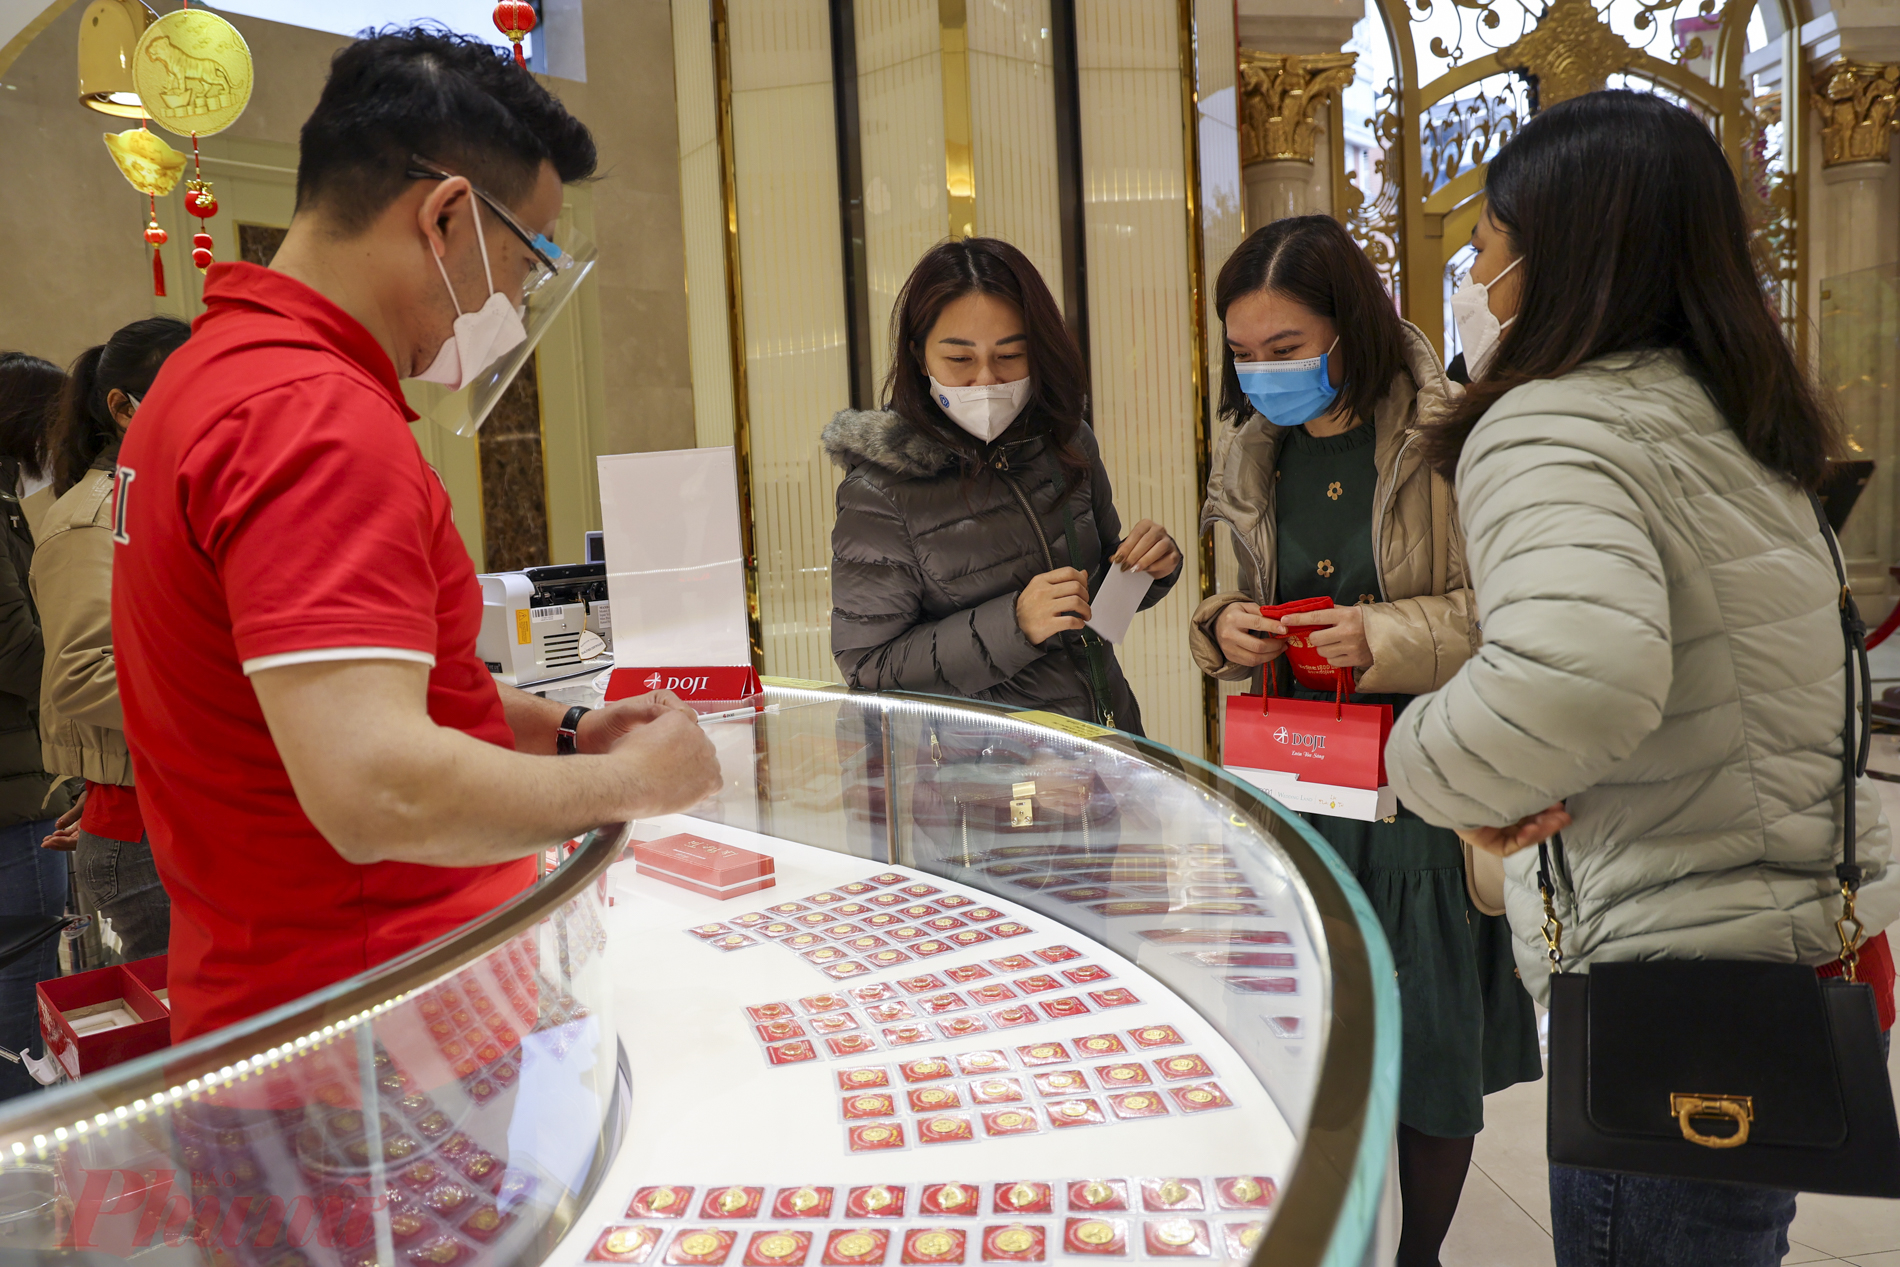 Tại các cửa hàng của DOJI, không khí mua vàng thần tài đã bắt đầu sôi động từ ngày mùng 8, tuy nhiên không còn cảnh người dân xếp hàng dài chờ đợi như mọi năm.